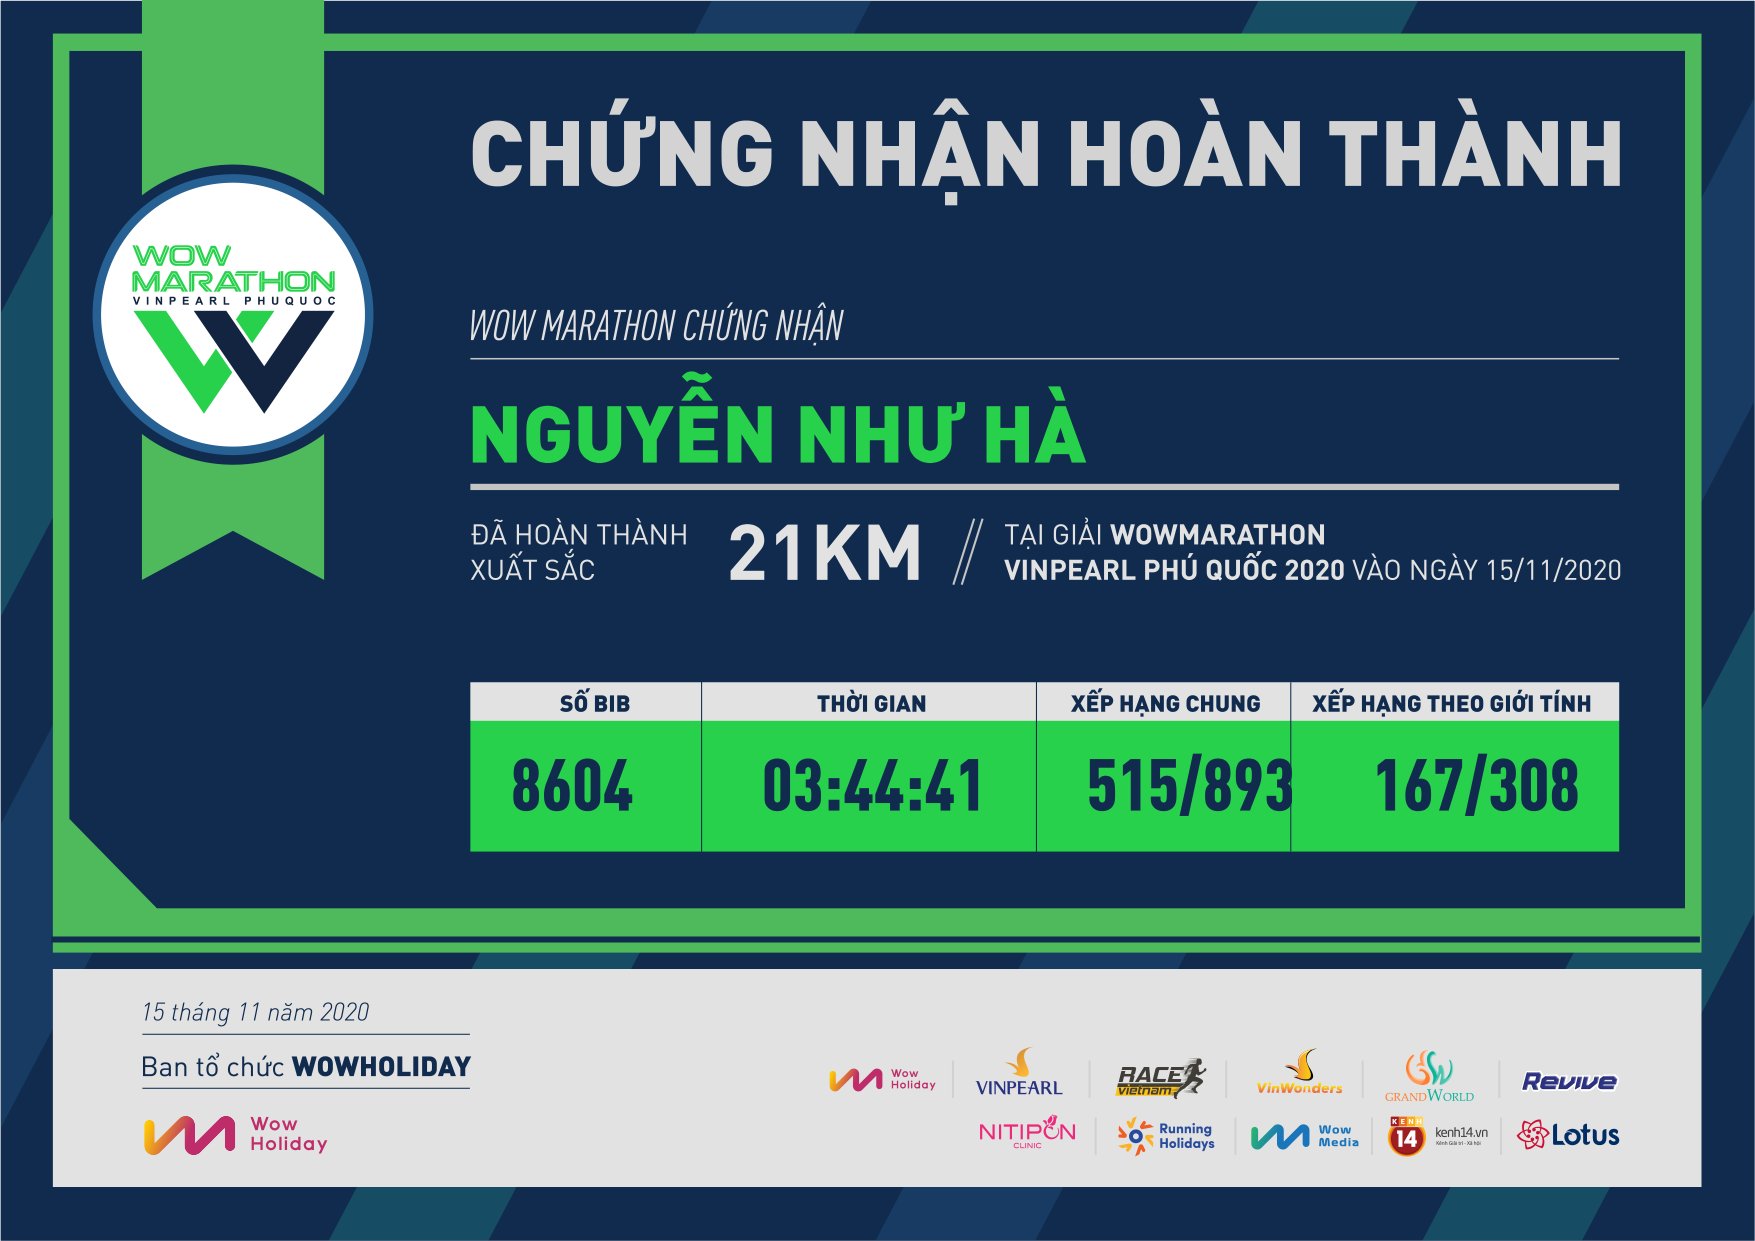 8604 - Nguyễn Như Hà